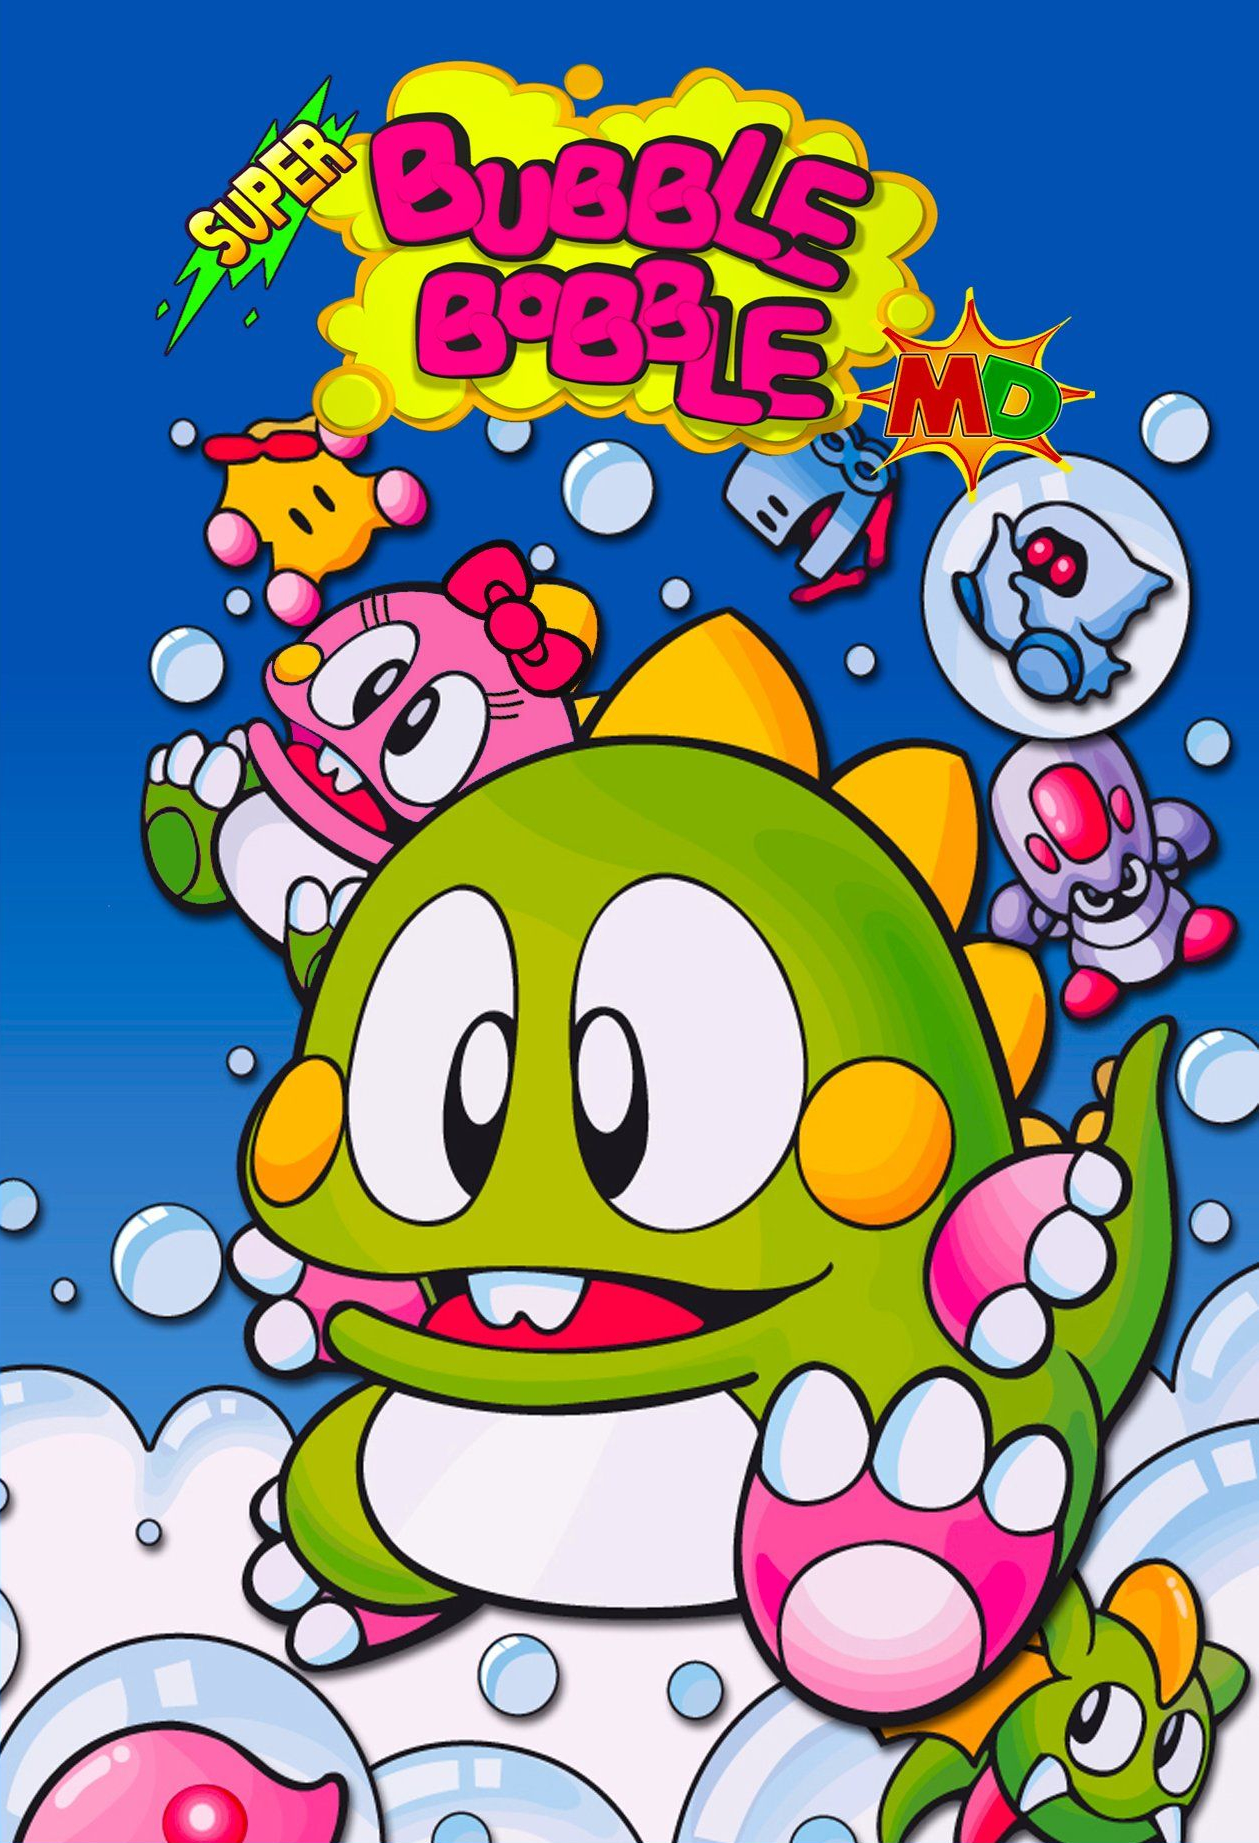 Super Bubble Bobble 16bit Cartão De Jogo MD Carrinho Para Sega